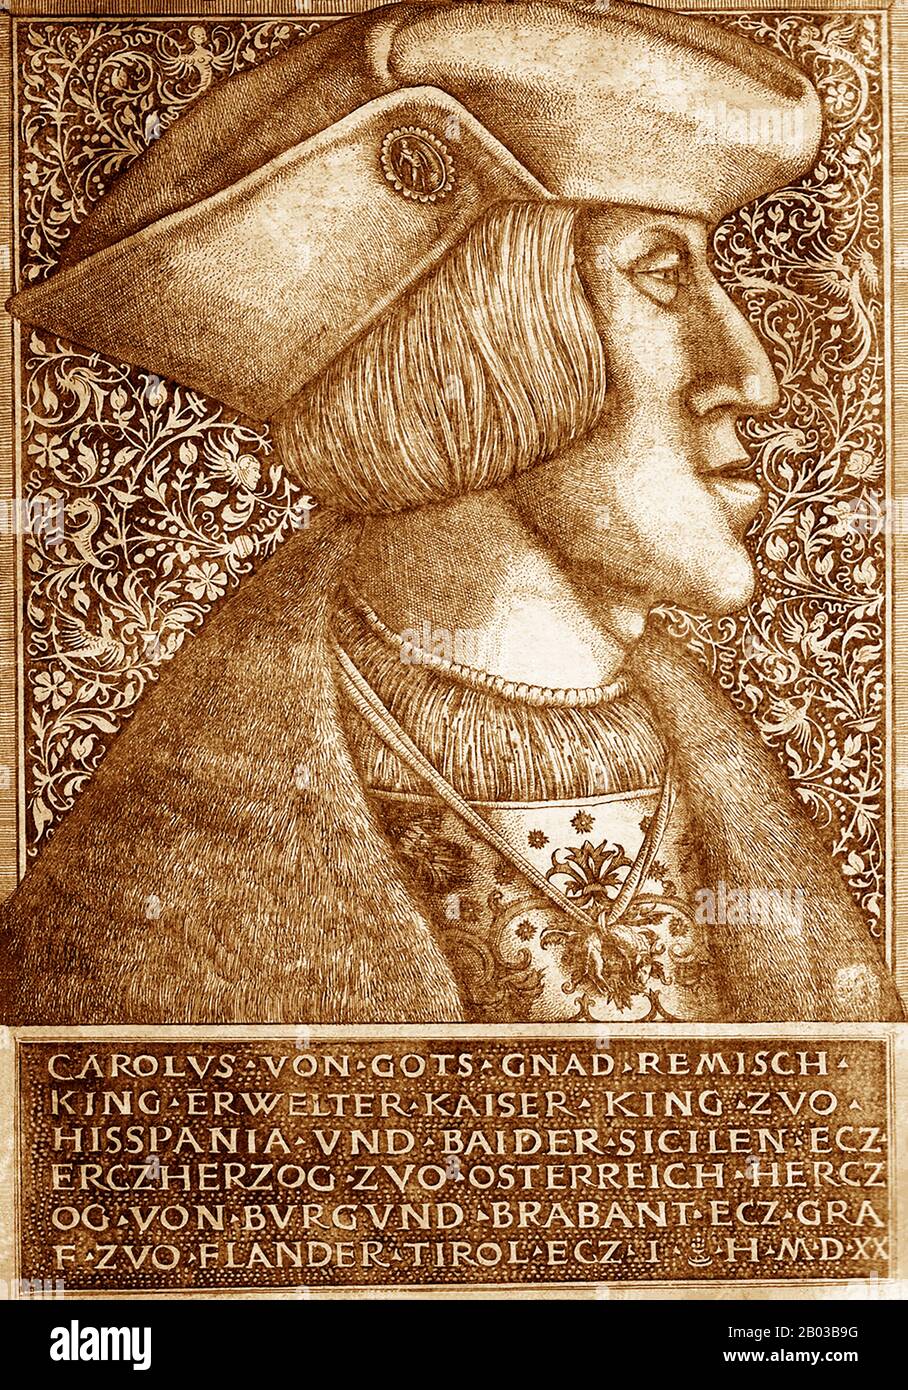 Karl V. (24. Februar 1500 - 21. September 1558) war ab 1519 sowohl der Herr des Heiligen römischen Imperiums als auch des spanischen Kaiserreichs (als Karl I. von Spanien) von 1516 als auch der Länder des ehemaligen Herzogthums von Burgunden von 1506. Von diesen und anderen Positionen trat er durch eine Reihe von Abwendungen zwischen 1554 und 1556 zurück. Stockfoto